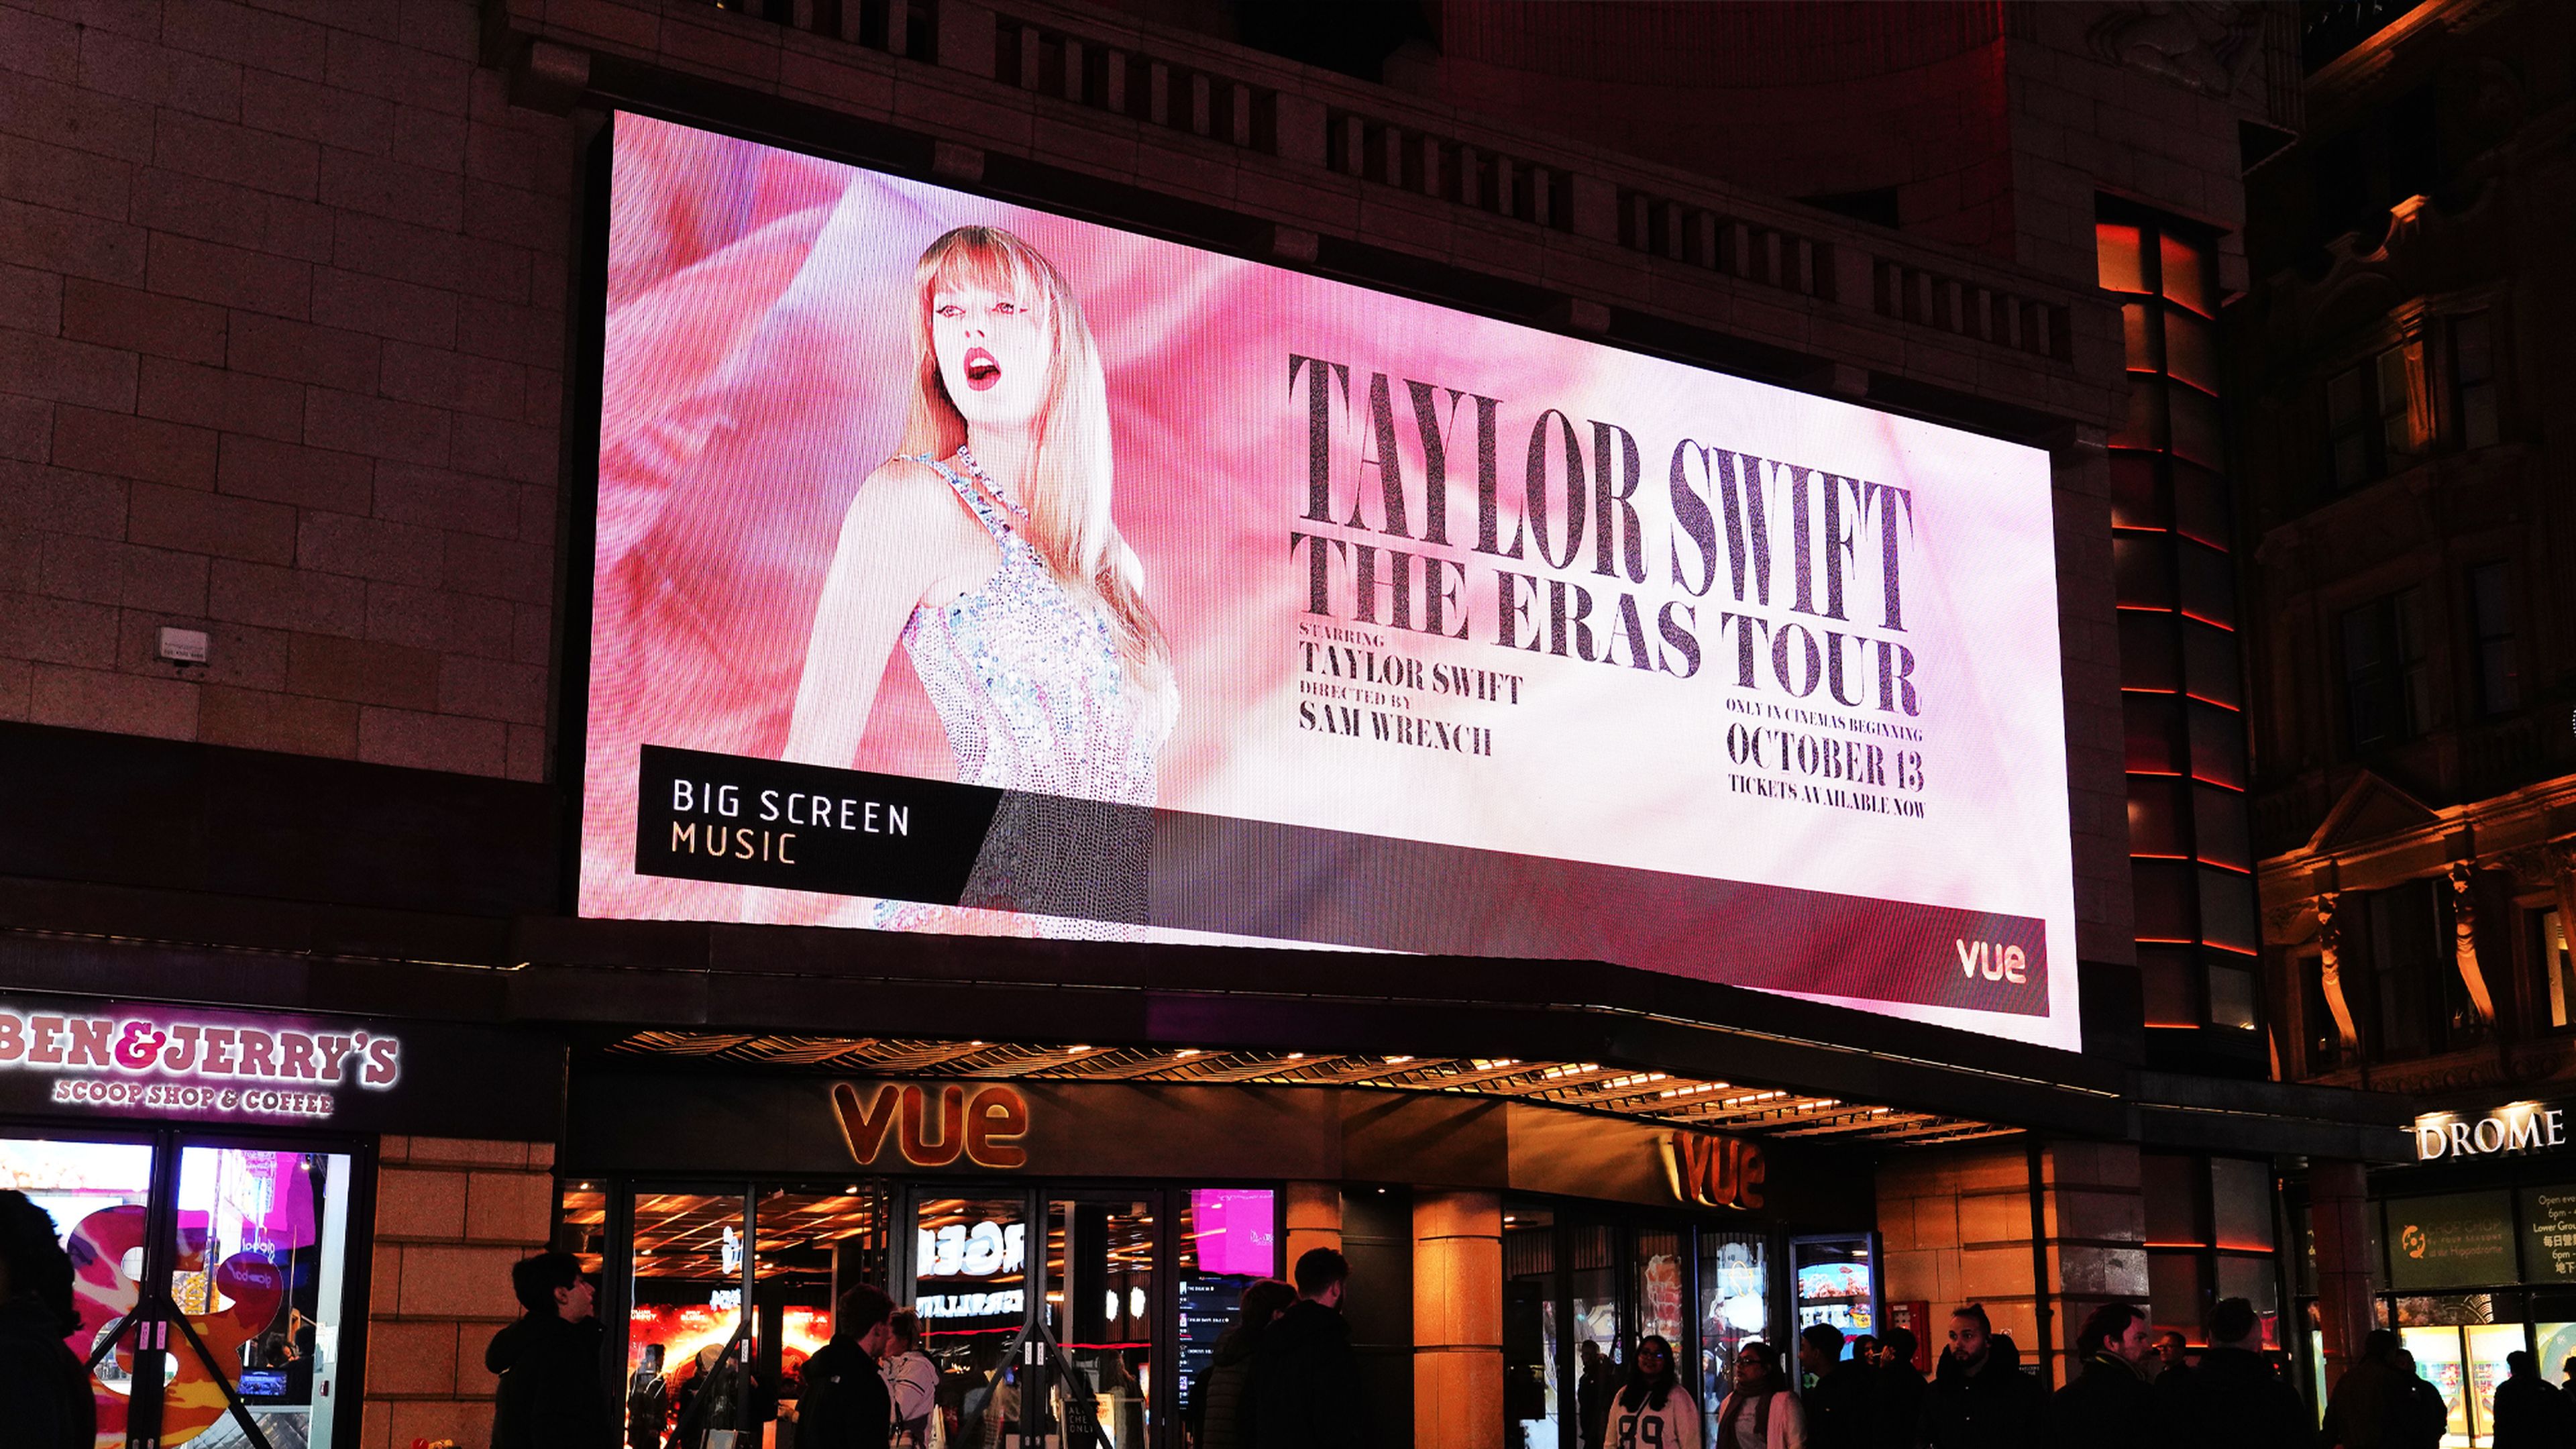 The Eras Tour de Taylor Swift